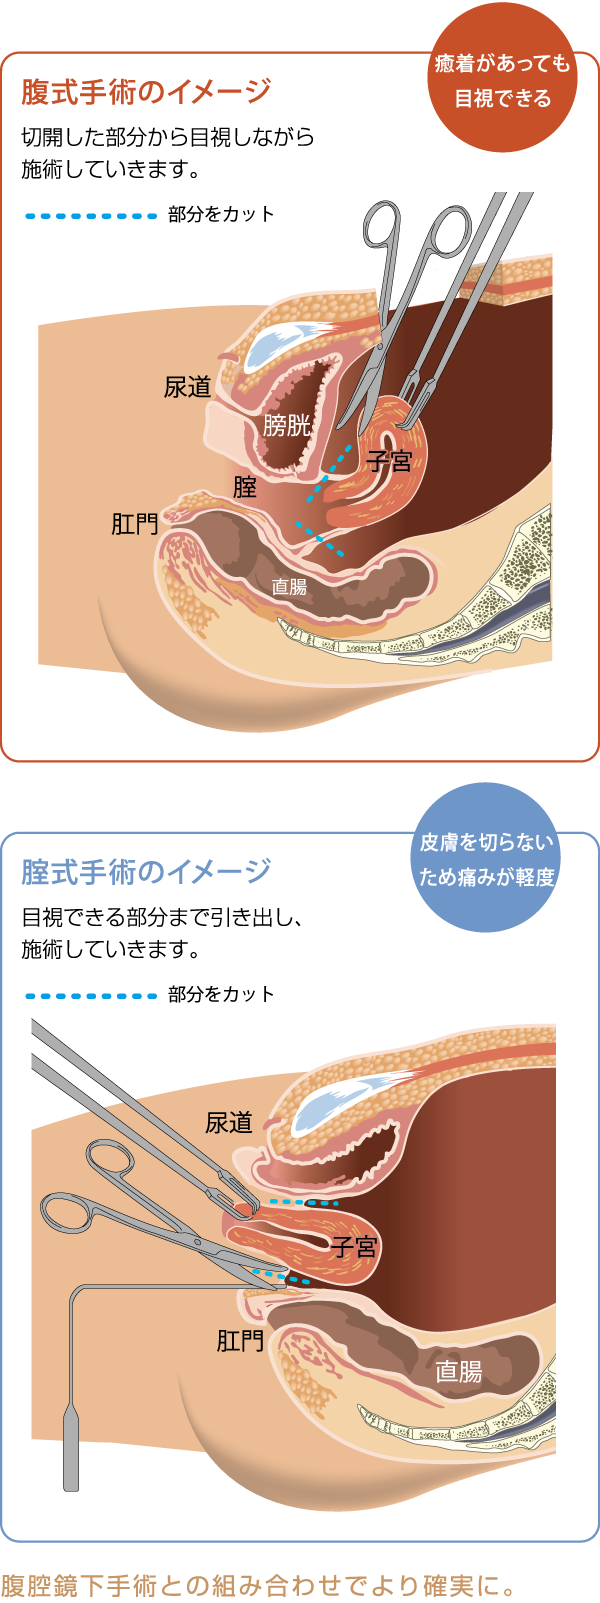 膣式子宮摘出手術 - 熊本市 | 産婦人科 無痛分娩 小児科 慈恵病院